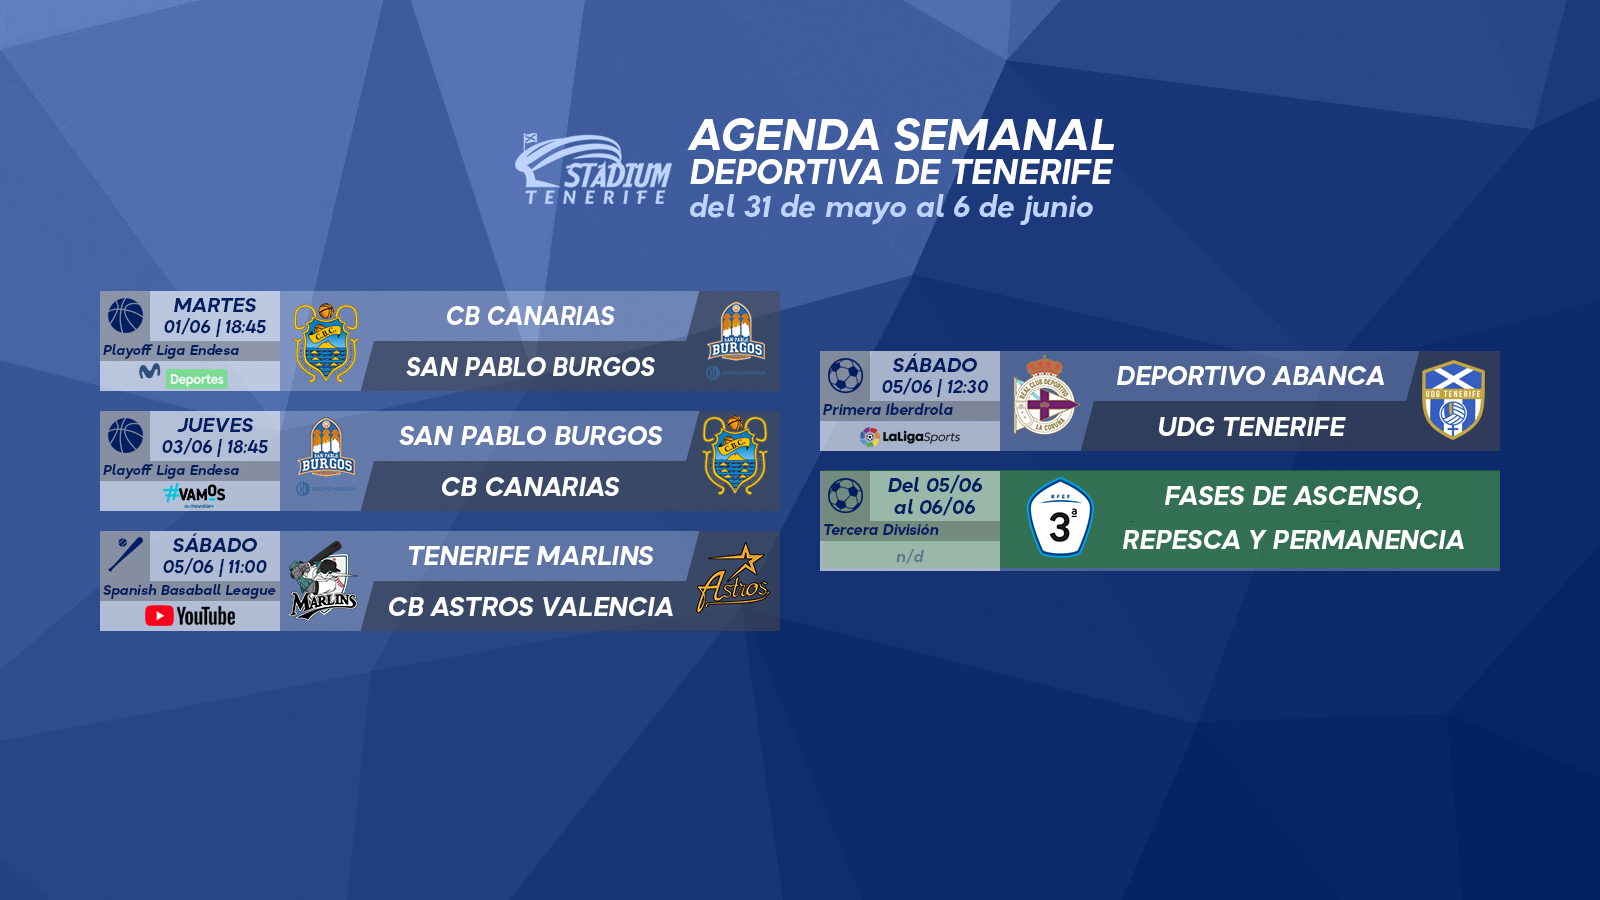 Agenda Semanal Deportiva de Tenerife (31 de mayo al 6 de junio)